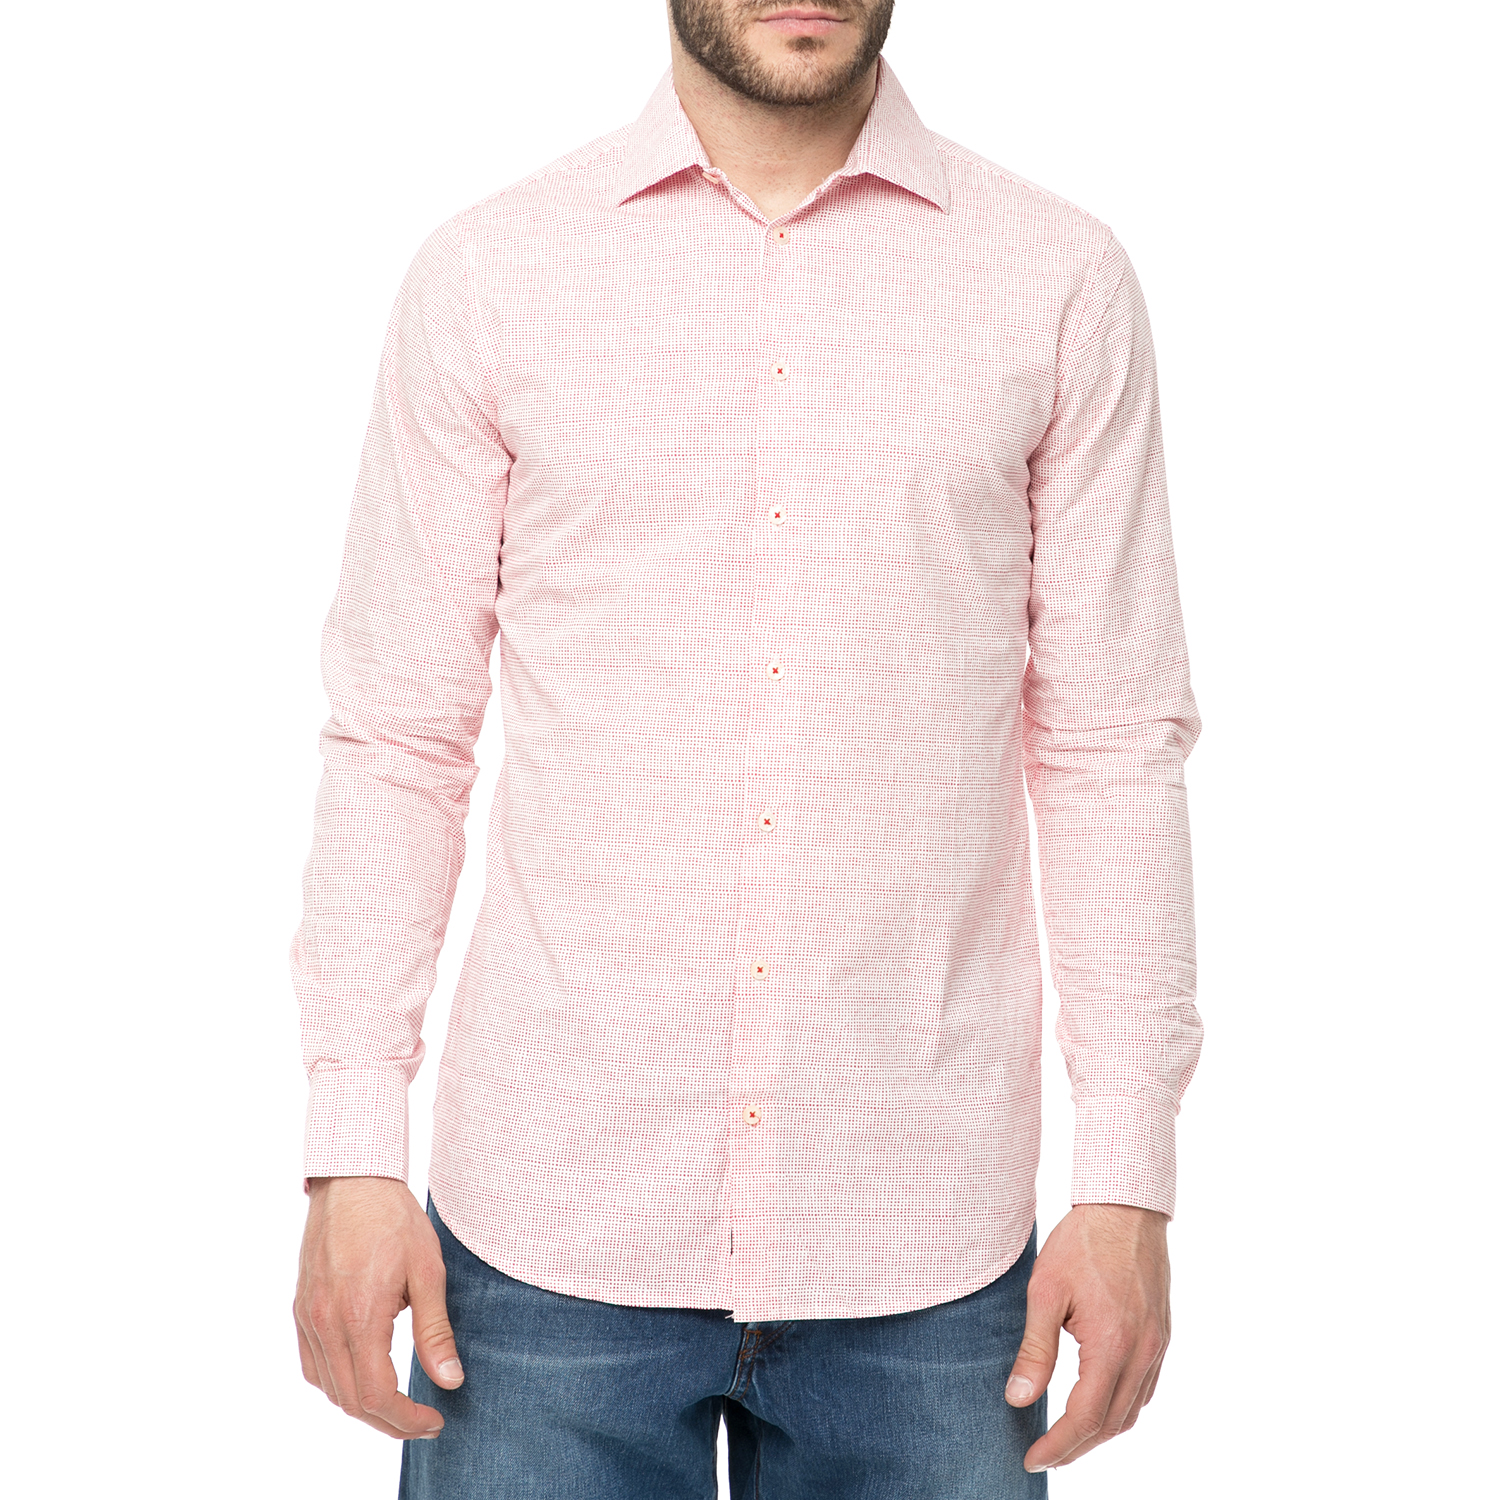 FUNKY BUDDHA - Ανδρικό πουκάμισο FUNKY BUDDHA ροζ